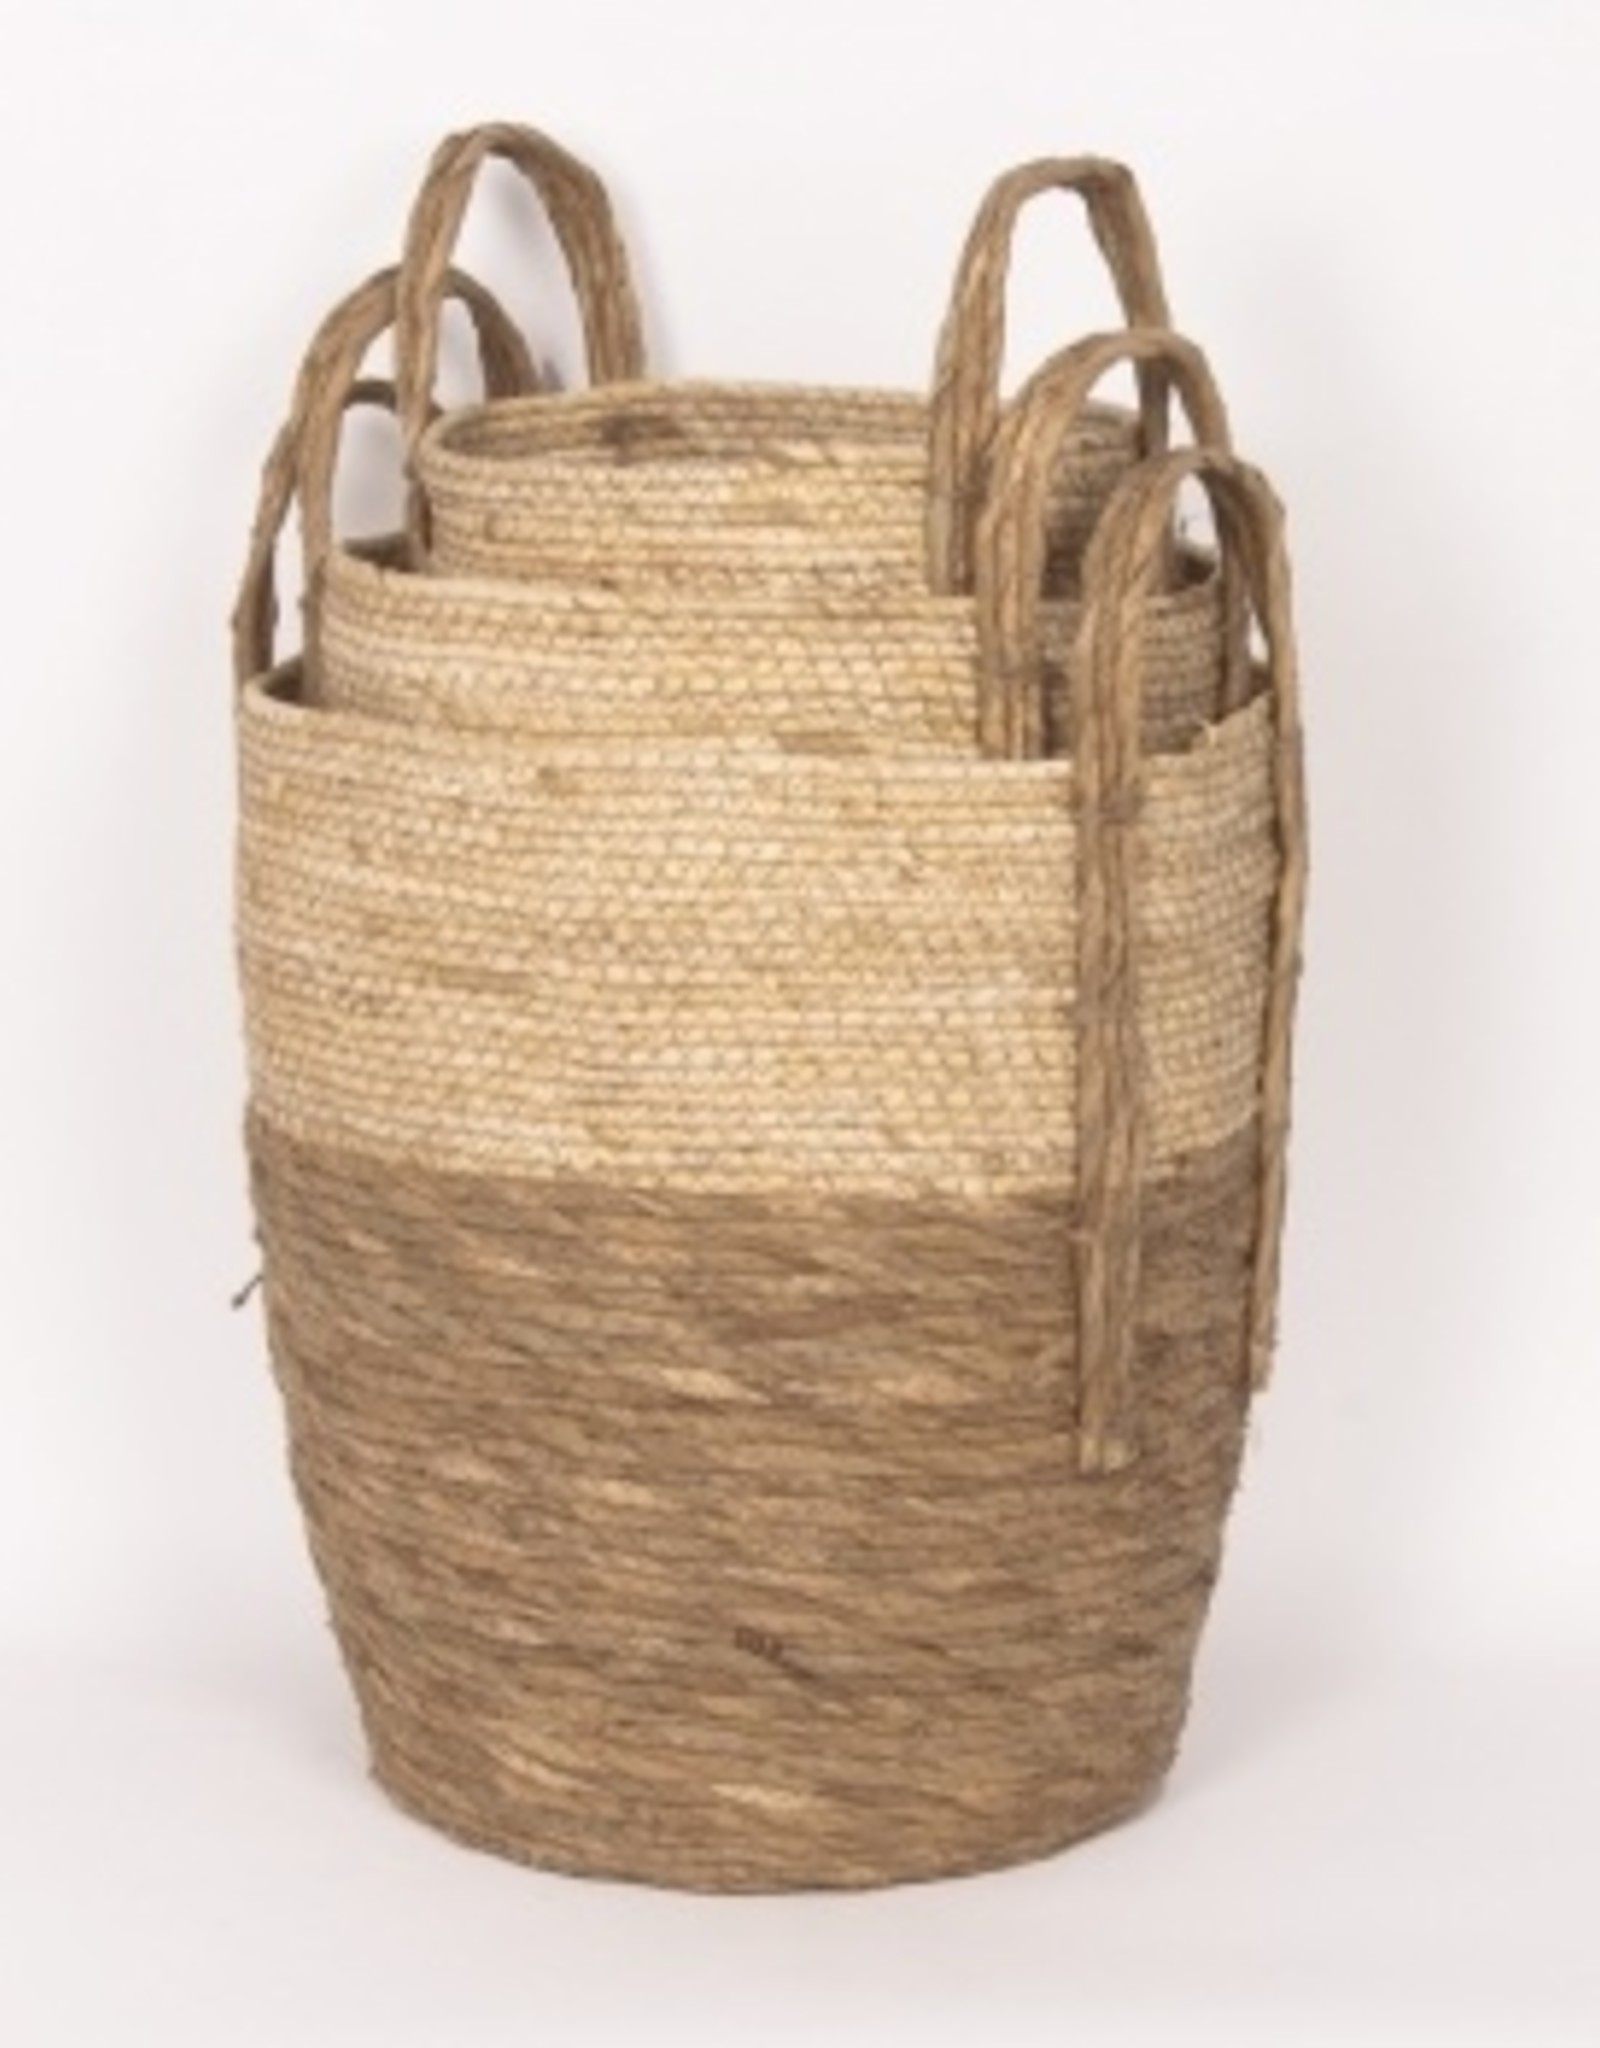 Beige/Natural Straw Basket (large)